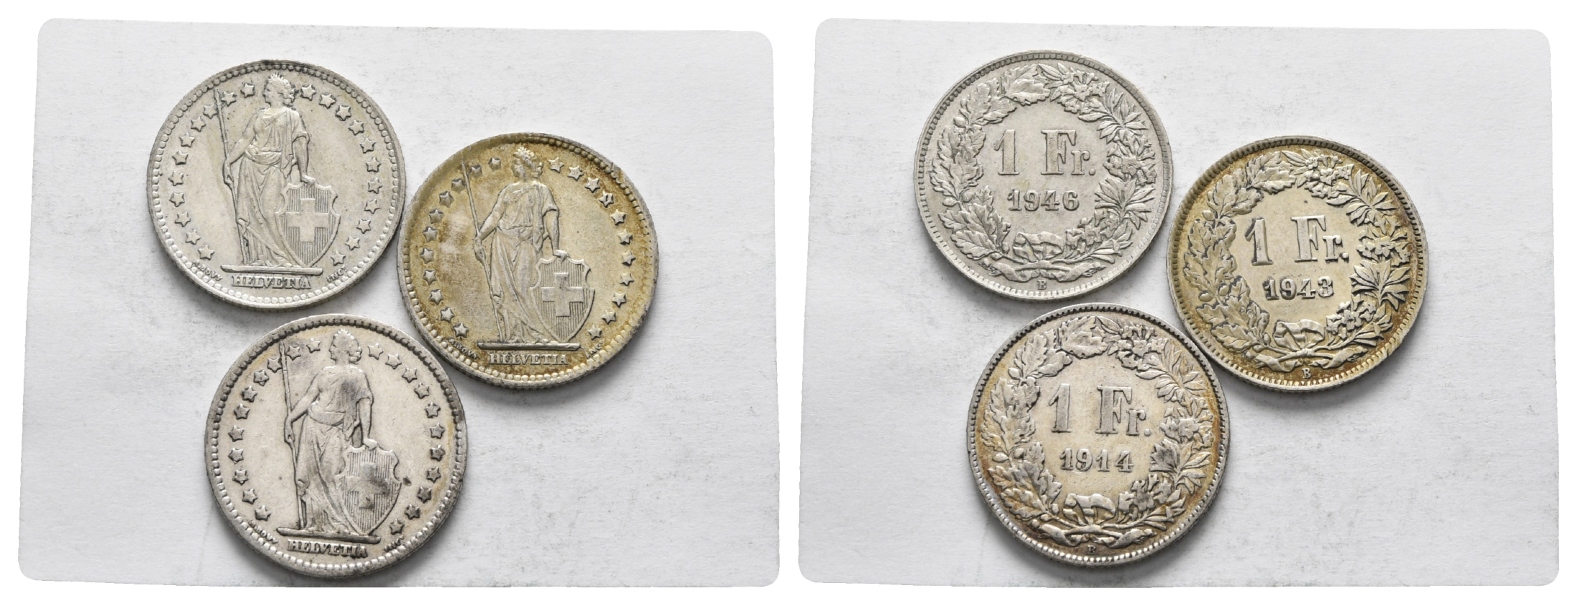  Schweiz; 3 Kleinmmünzen (1 Franken 1946/1943/1914)   